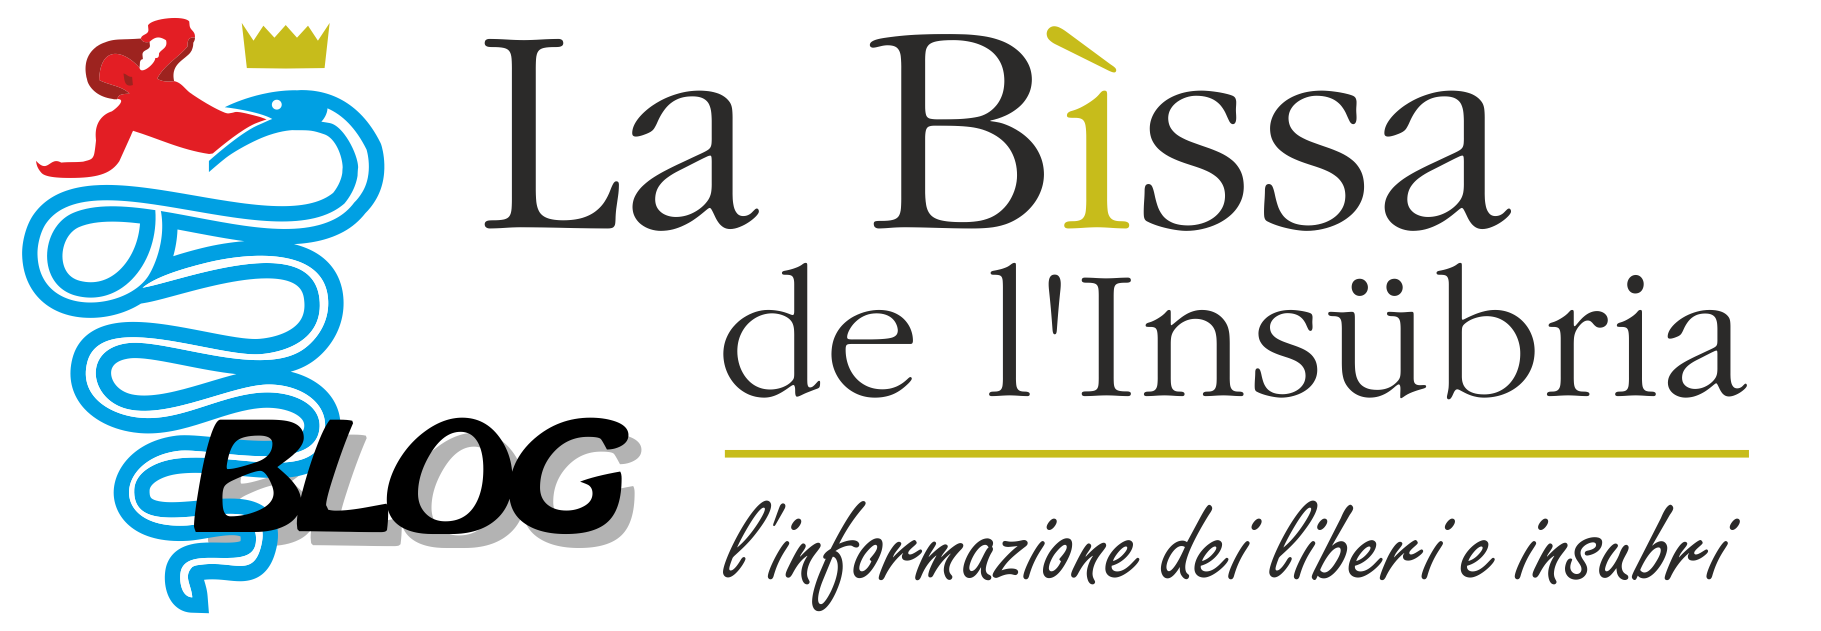 La bissa - banner 182x63 BLOG